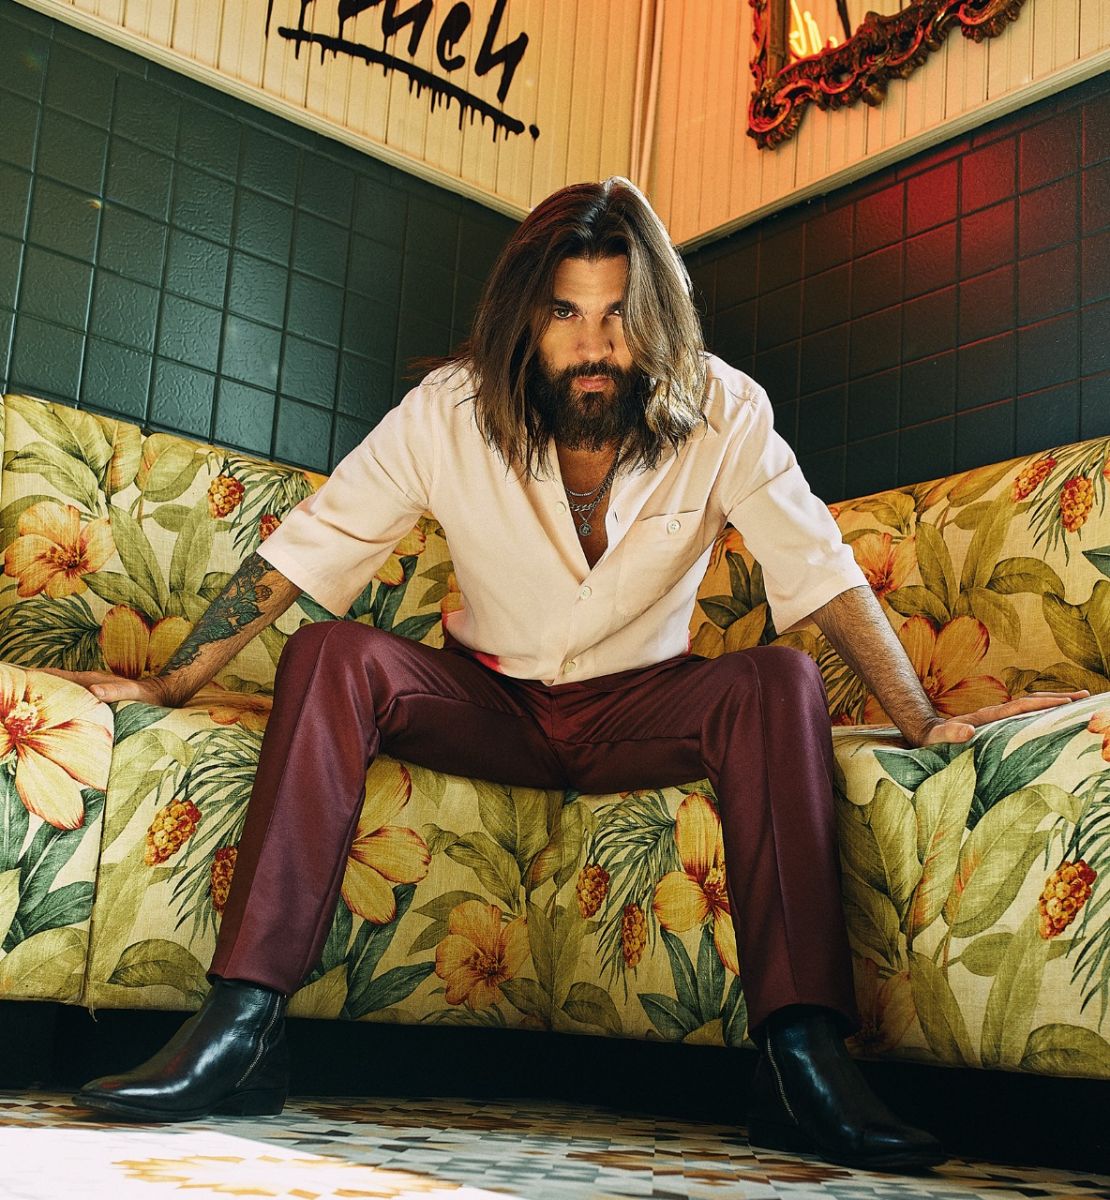 Buena crítica ha recibido el álbum “Origen”, de Juanes, una propuesta  atrevida y exquisita | La Portada Canadá